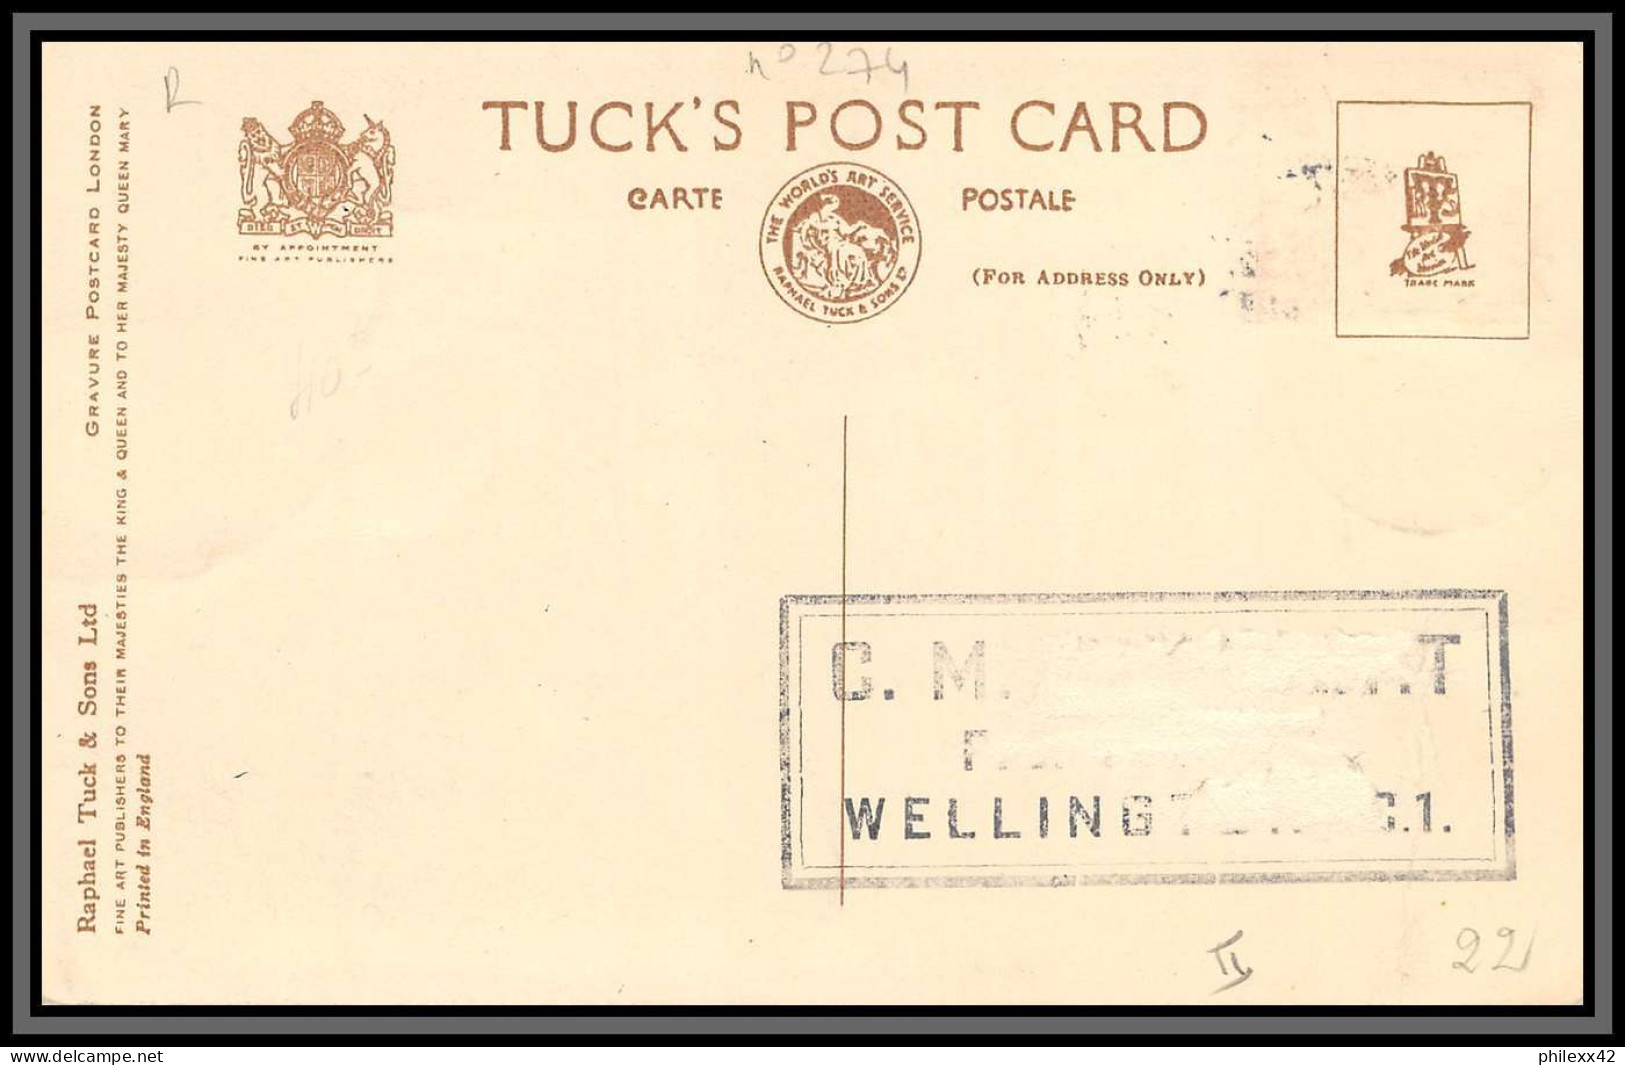 56967 N°274 Cathedrale St Paul London 1949 New Zelande Nouvelle Zélande Carte Maximum (card) édition Tuck Church - Storia Postale